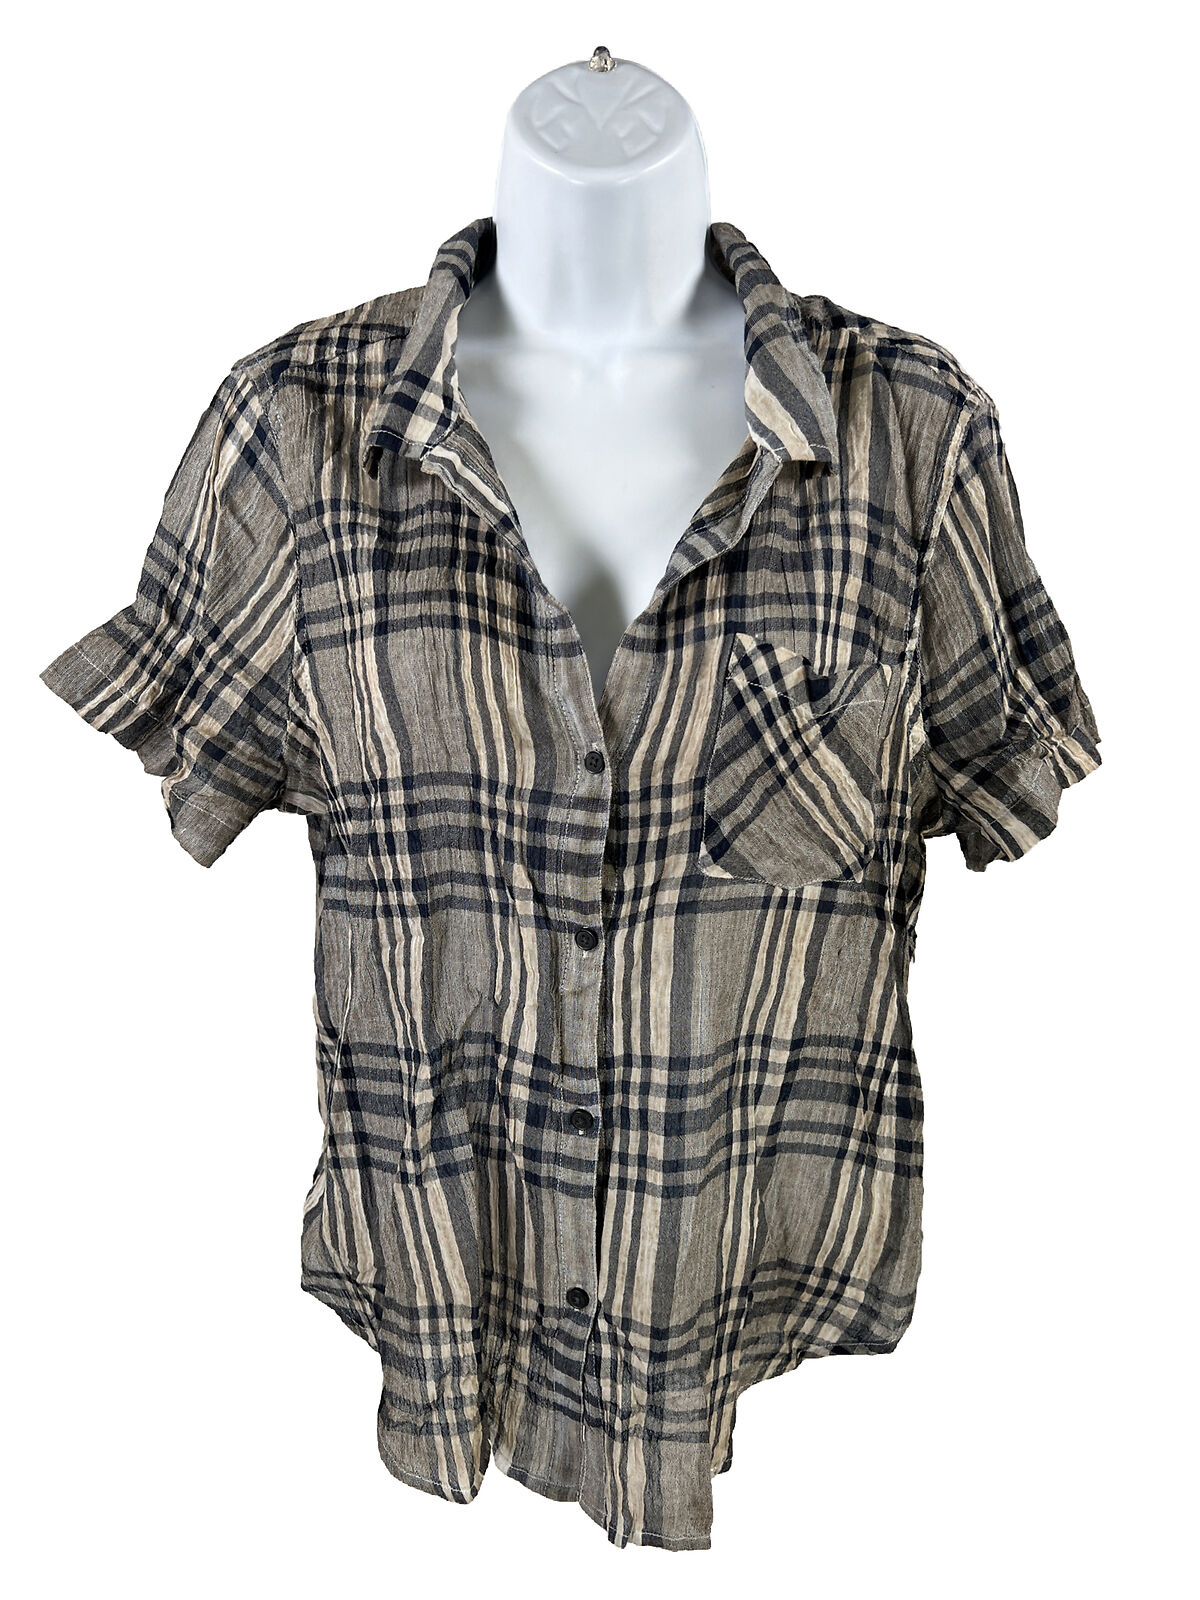 Lucky Brand Women's Gray/Blue Plaid Short Sleeve Button Up Shirt - L